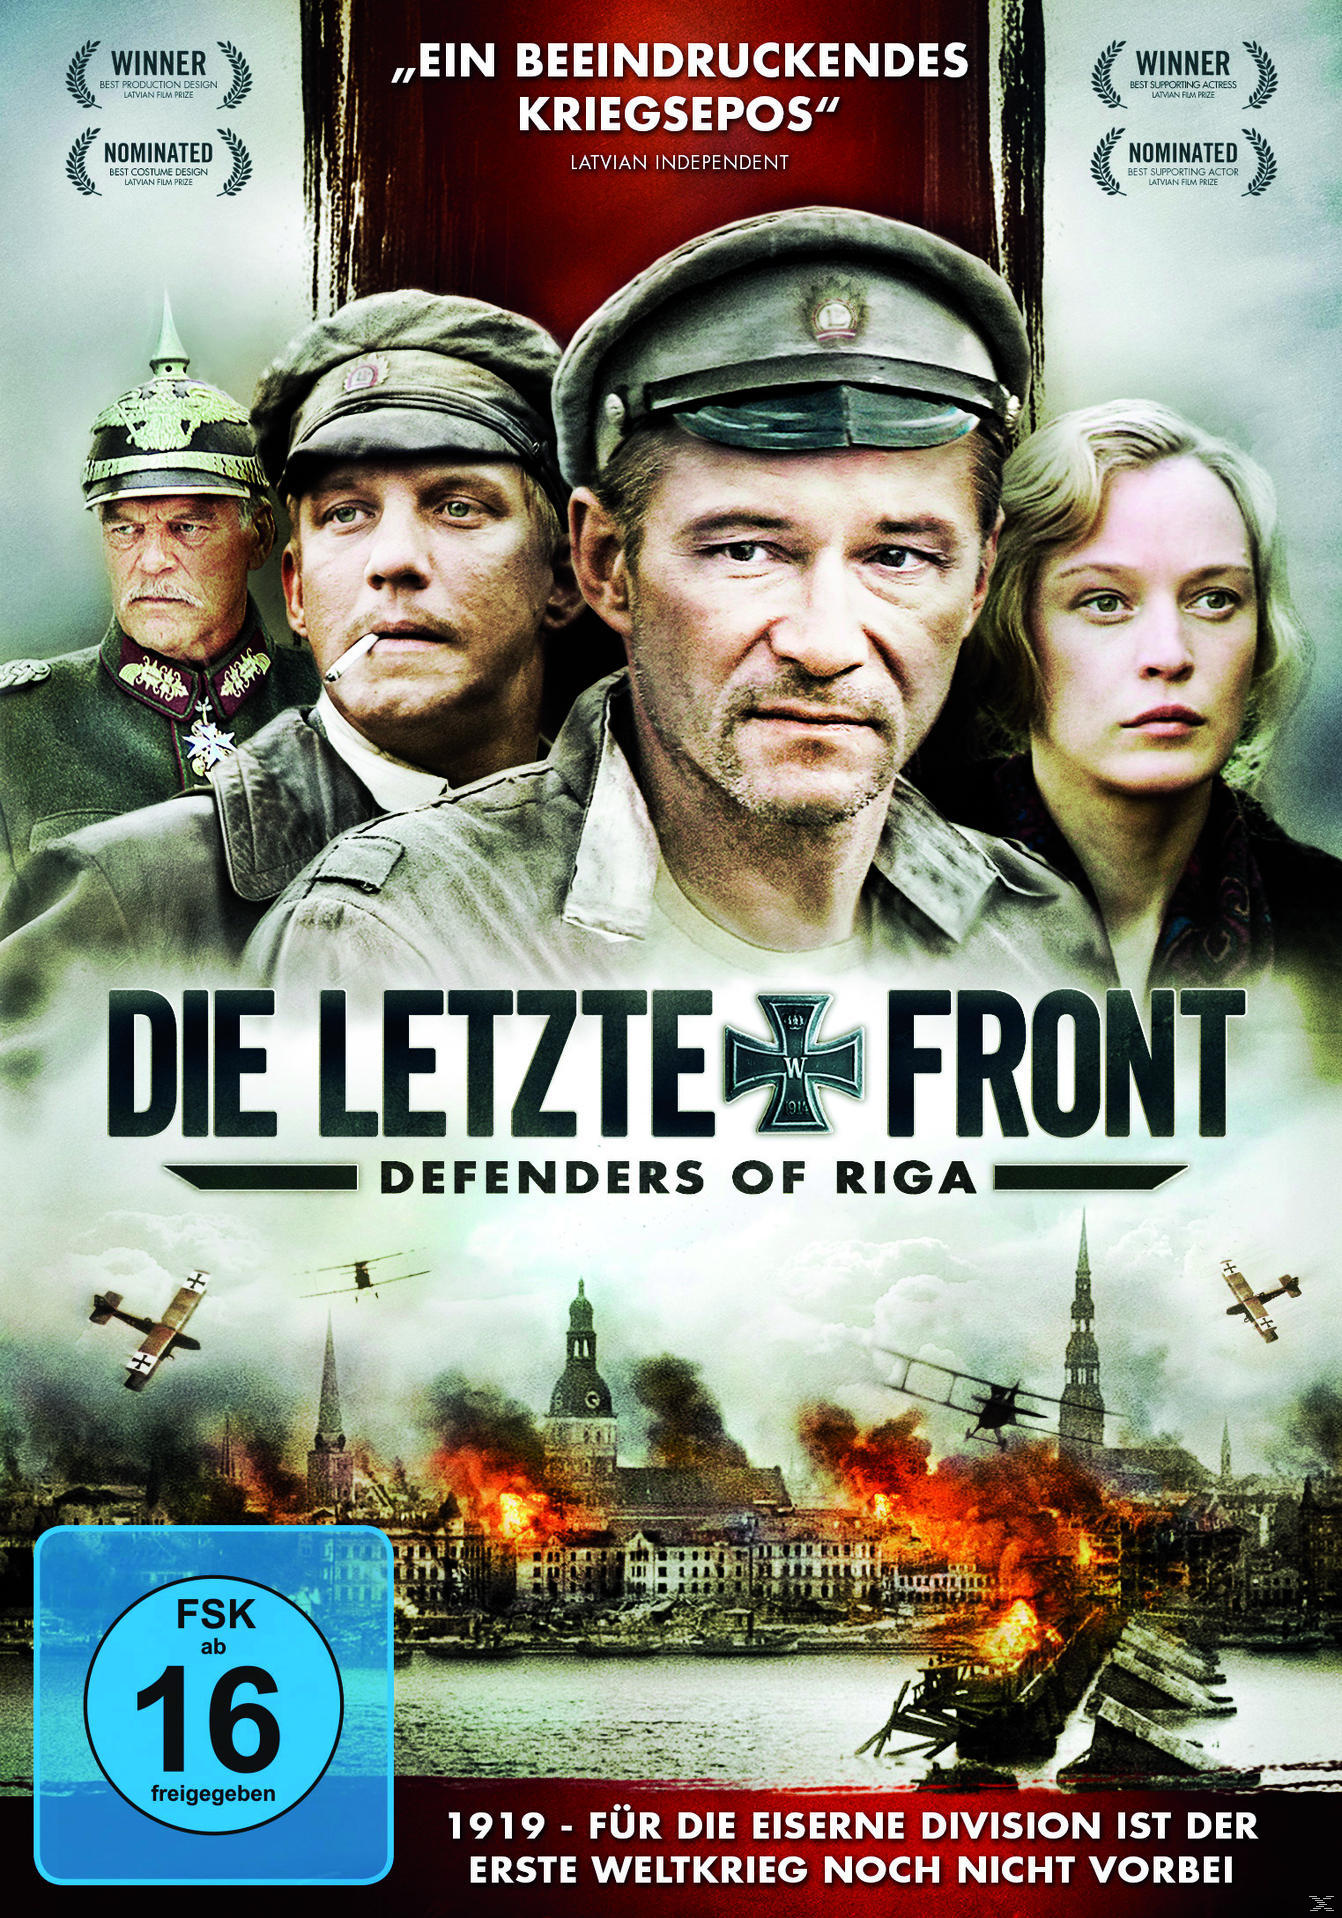 Die letzte Front - Defenders Riga of DVD